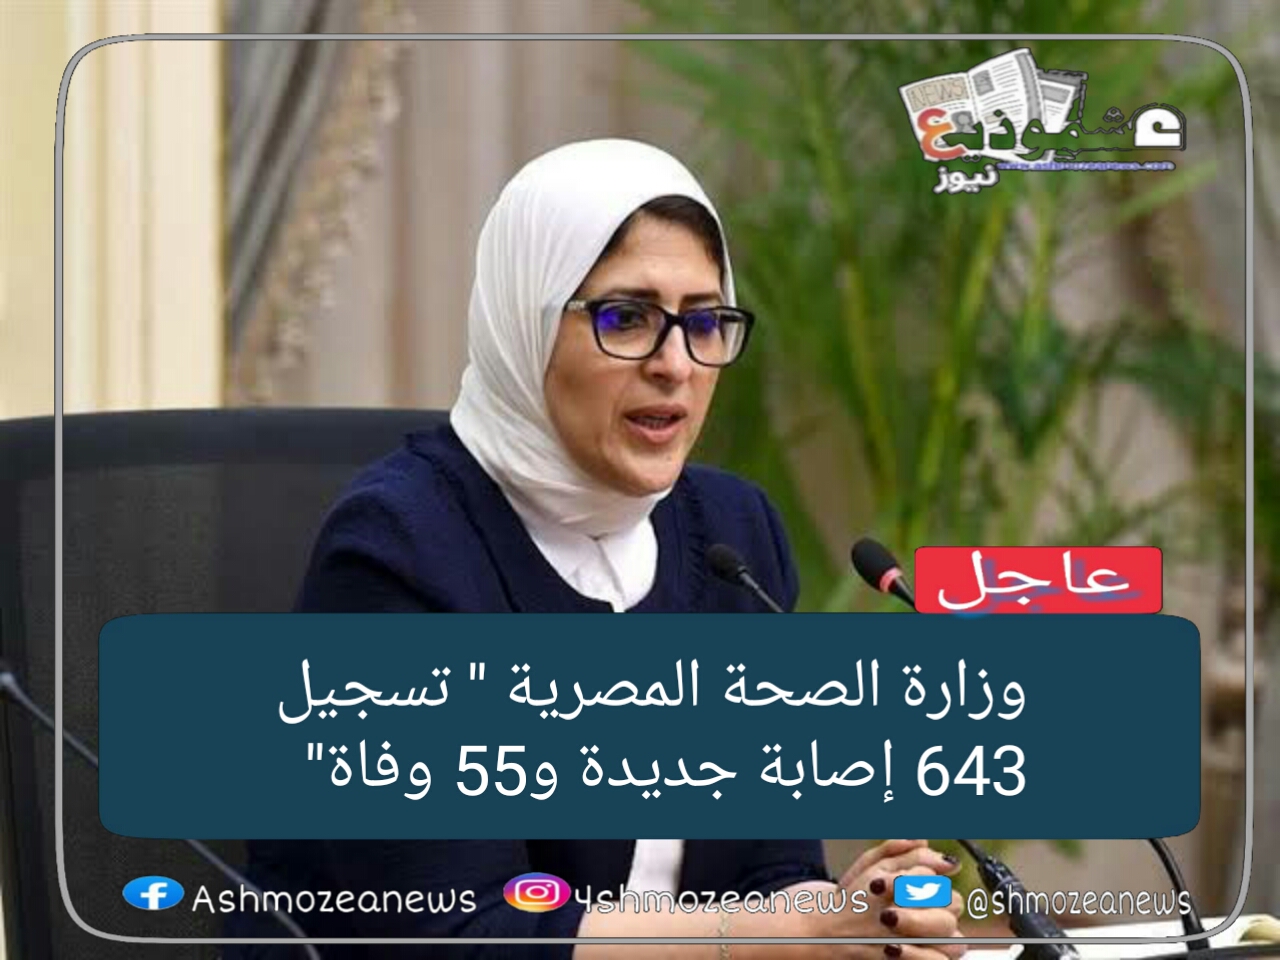 وزارة الصحة المصرية" تسجيل 643  إصابة جديدة و55 وفاة" 